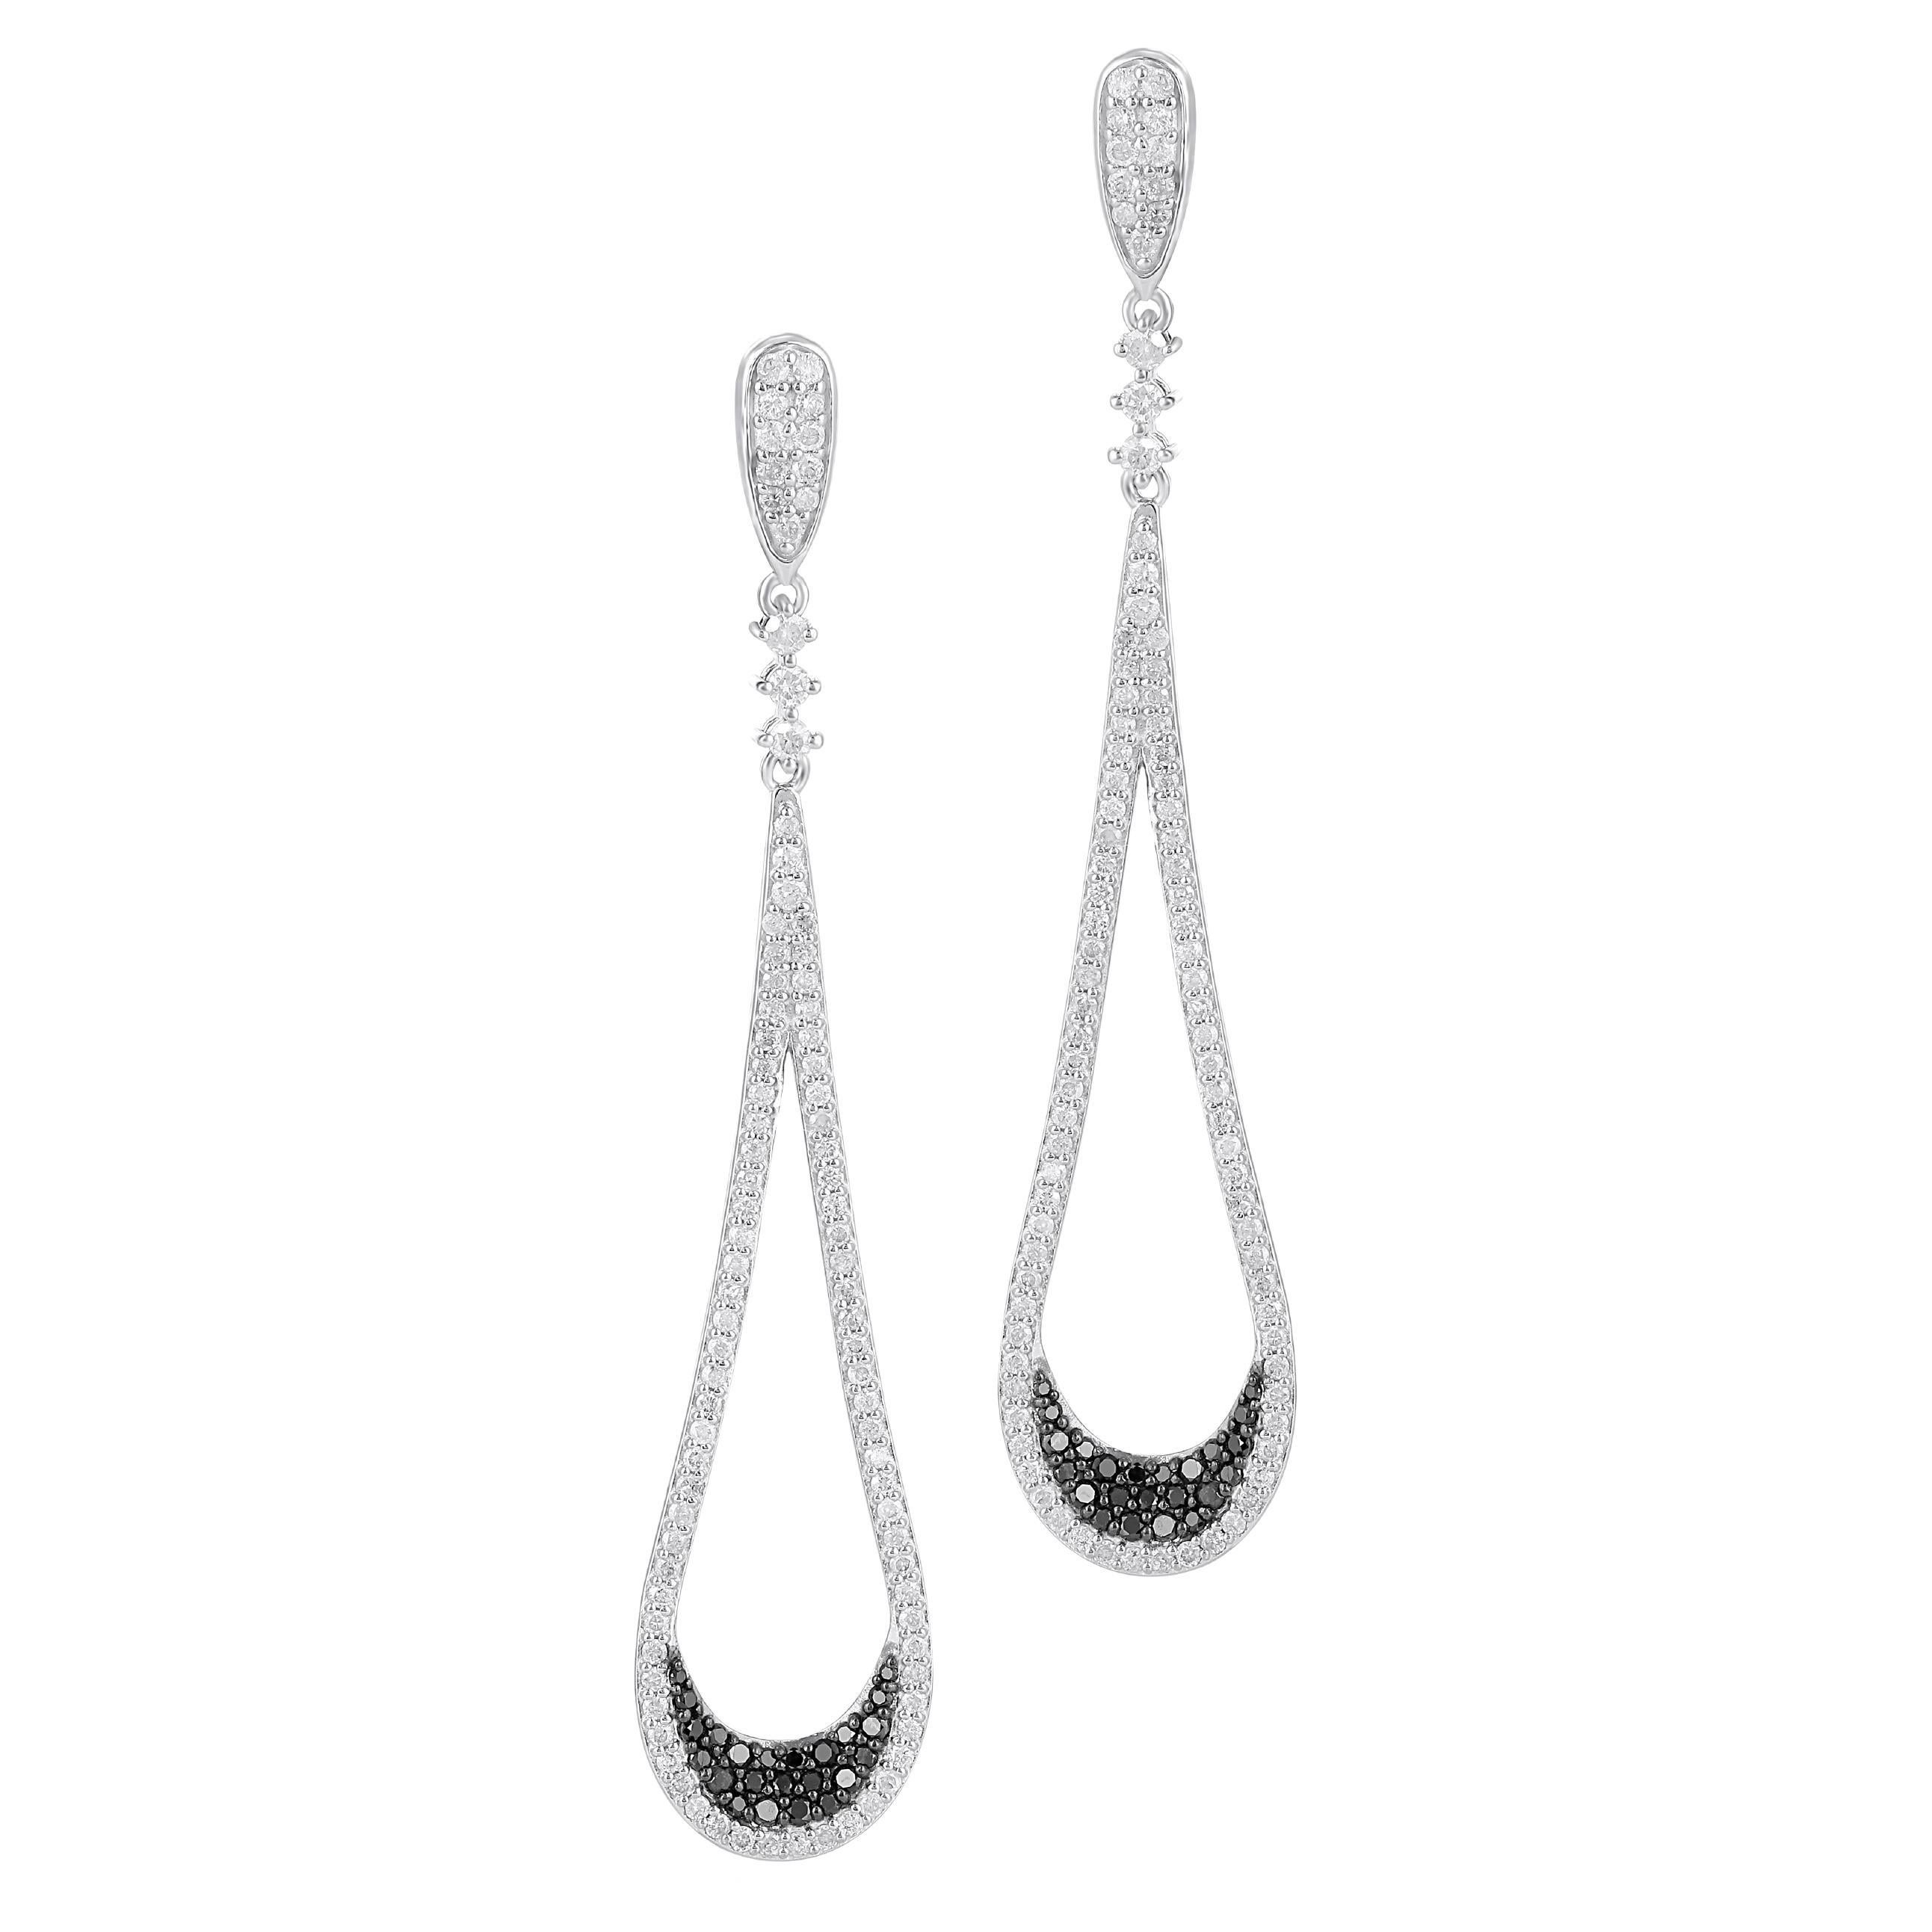 Gemistry 2.46 Carat T.W. Diamond Tear Drop Earrings in 925 Sterling Silver